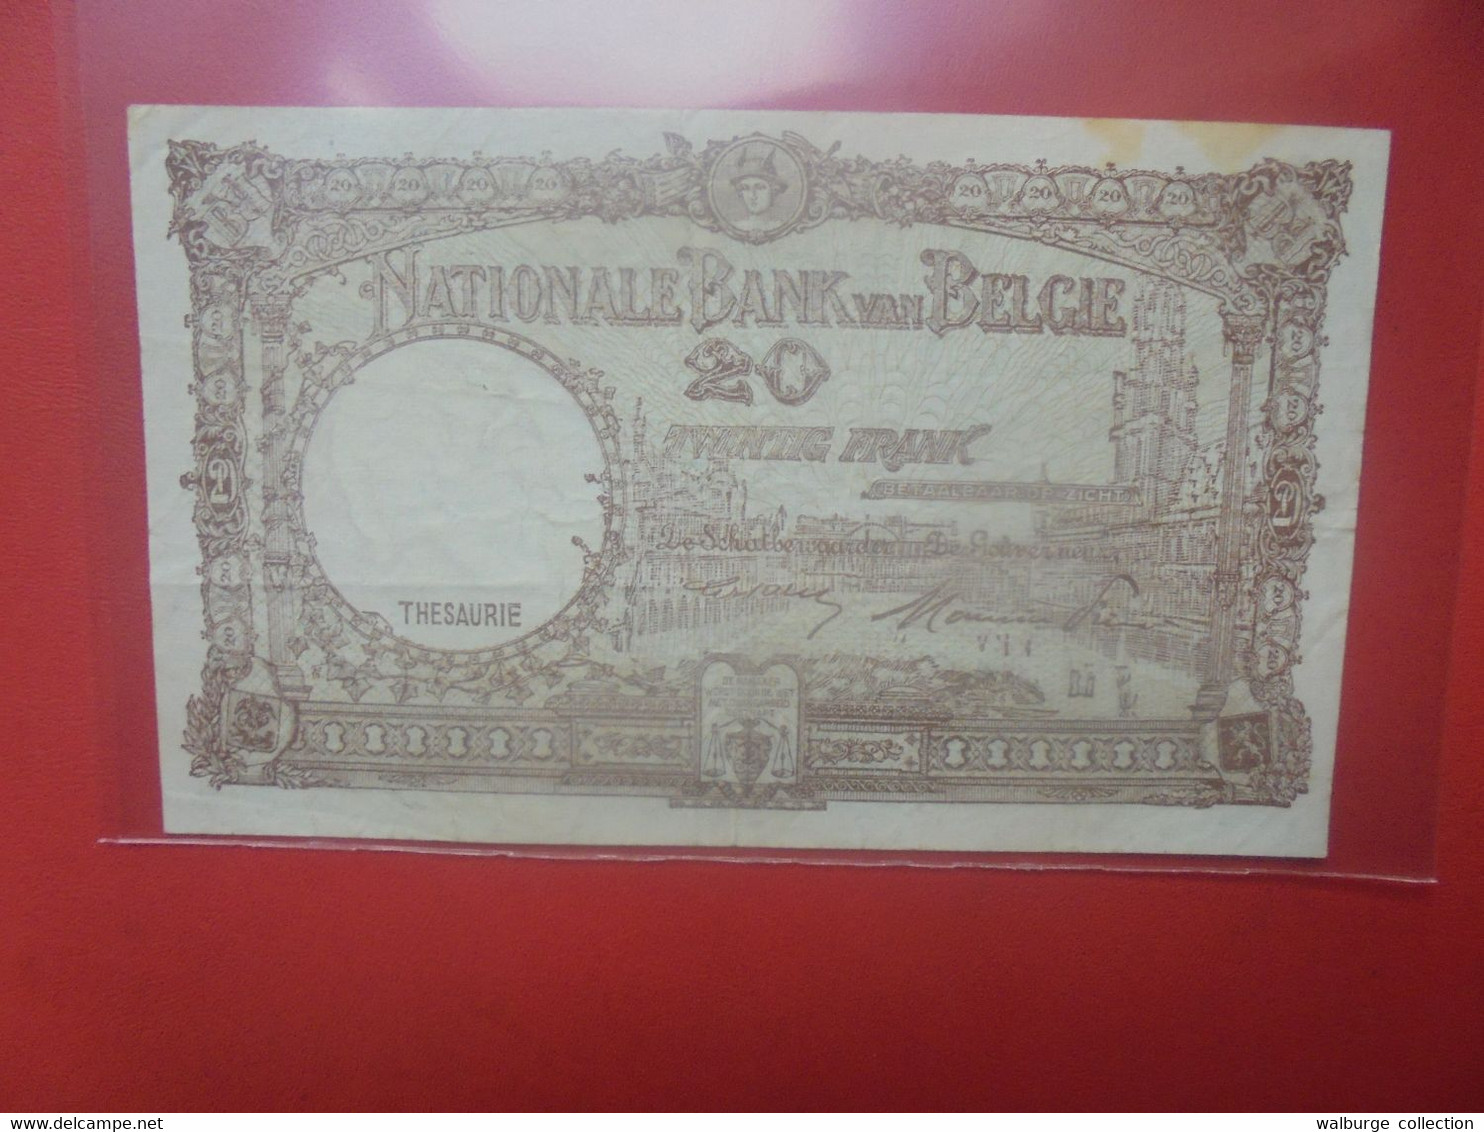 BELGIQUE 20 Francs 1-9-48 Circuler (B.18) - 20 Francs